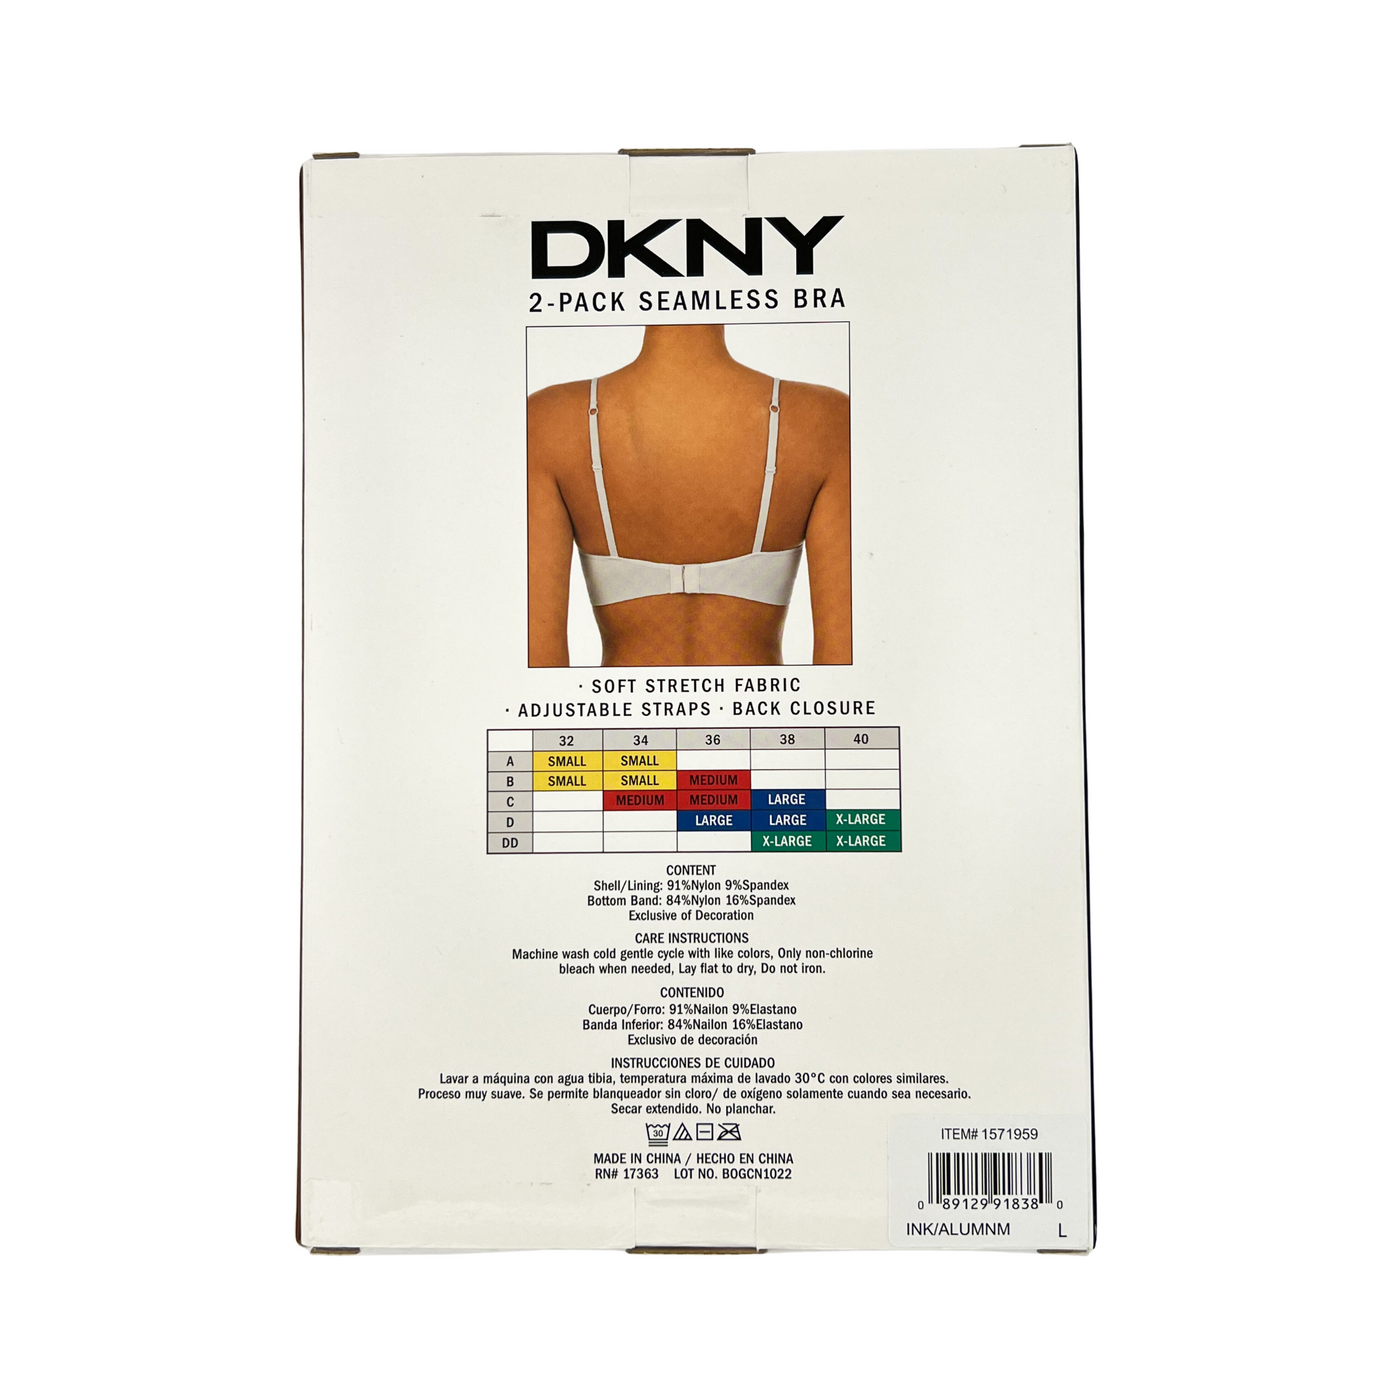 DKNY Seamless Bra 2pk - Small